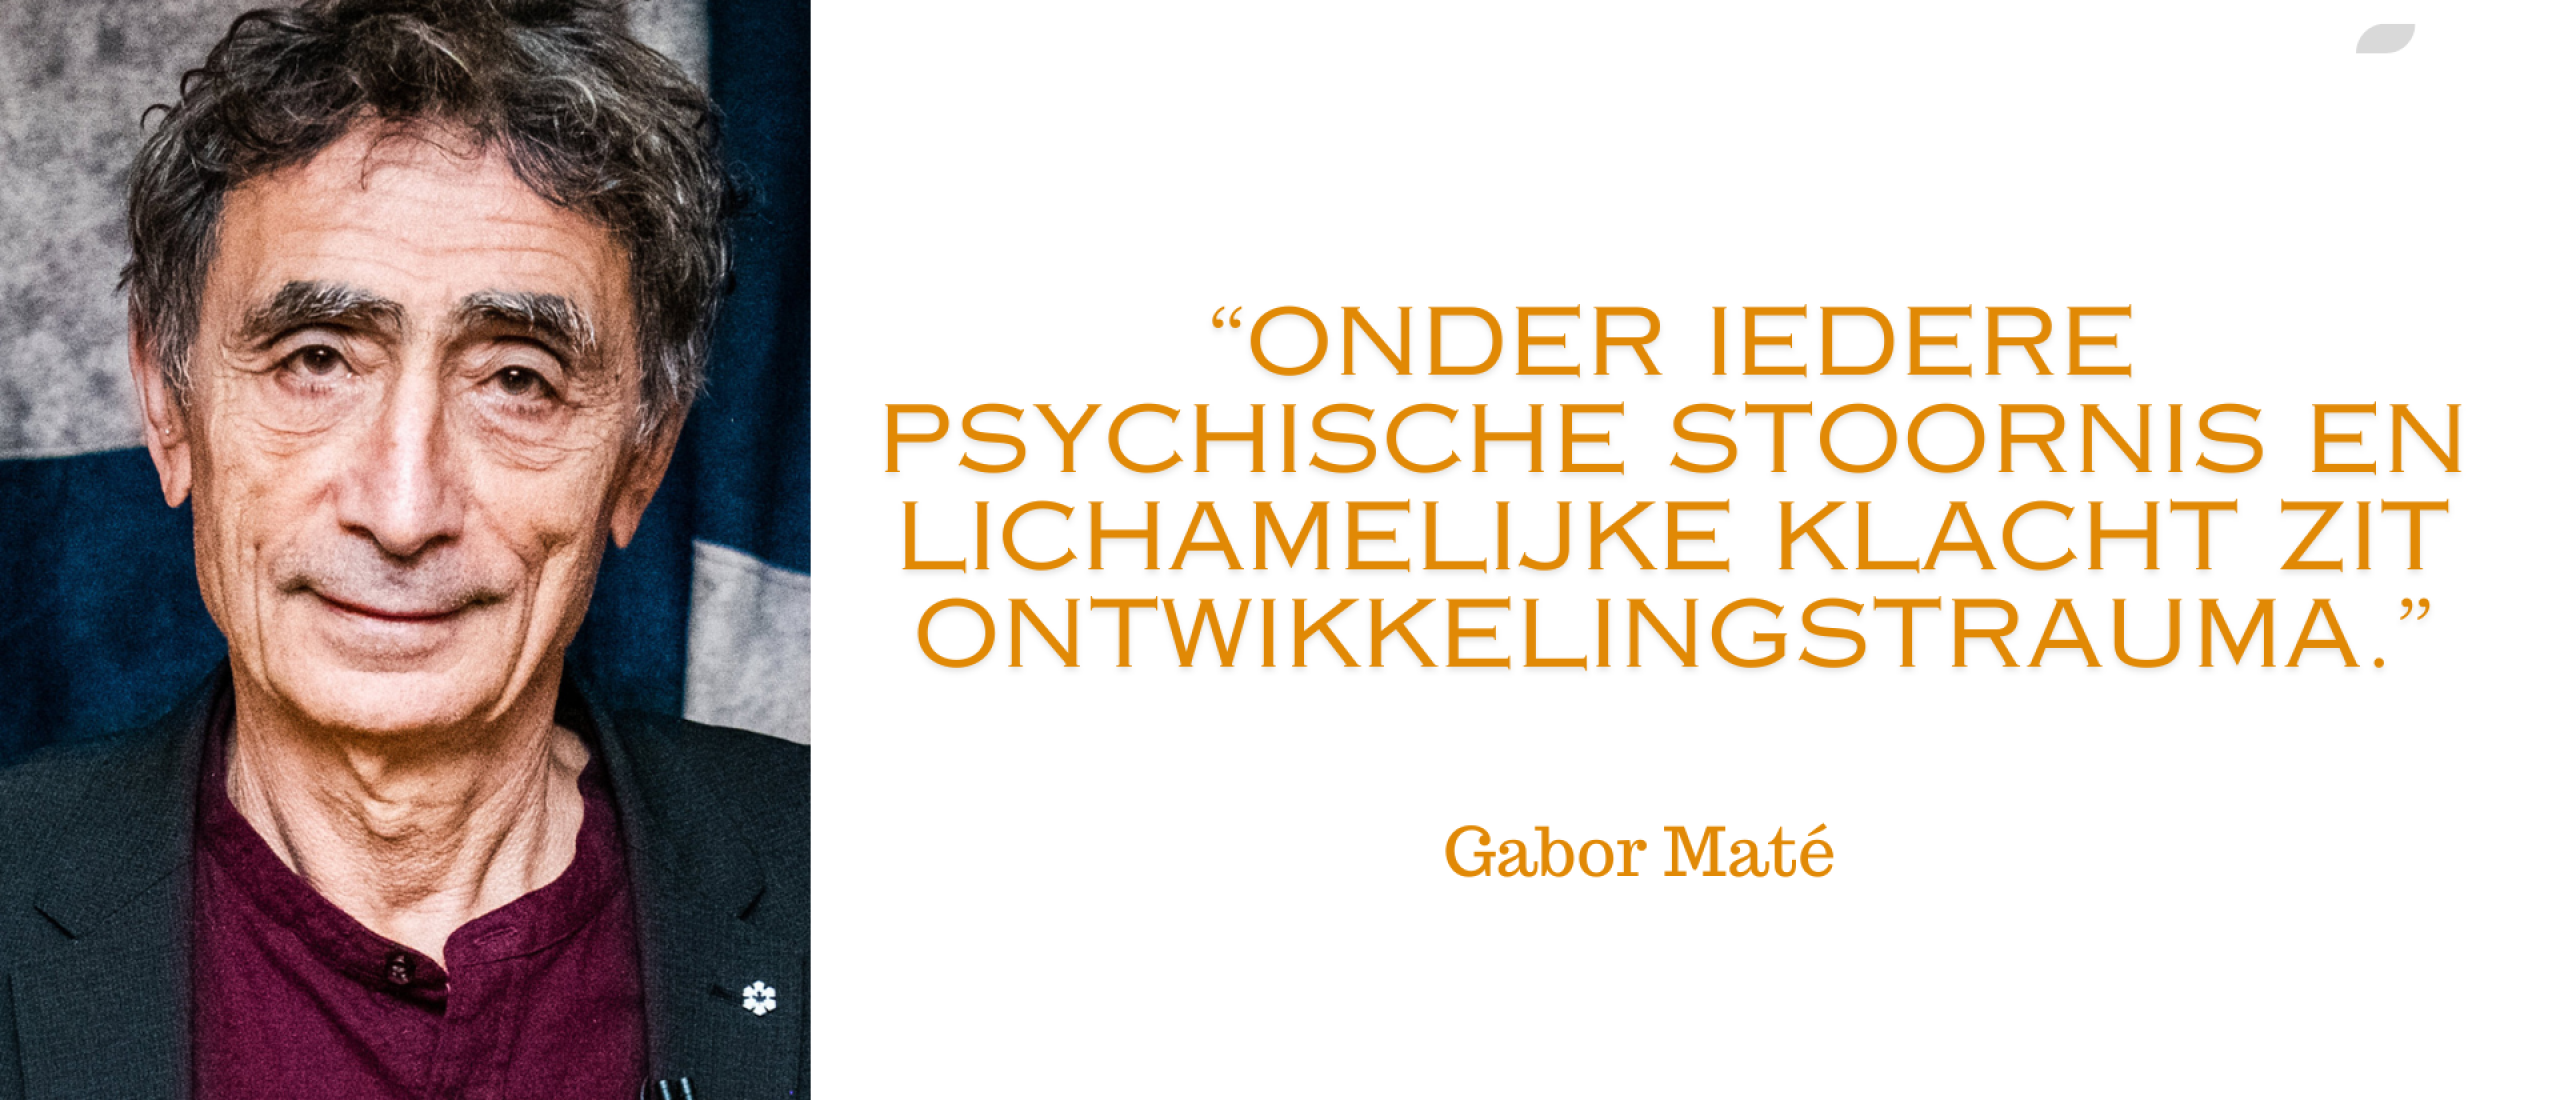 Gabor Maté een inspirerende reis naar begrip en heling